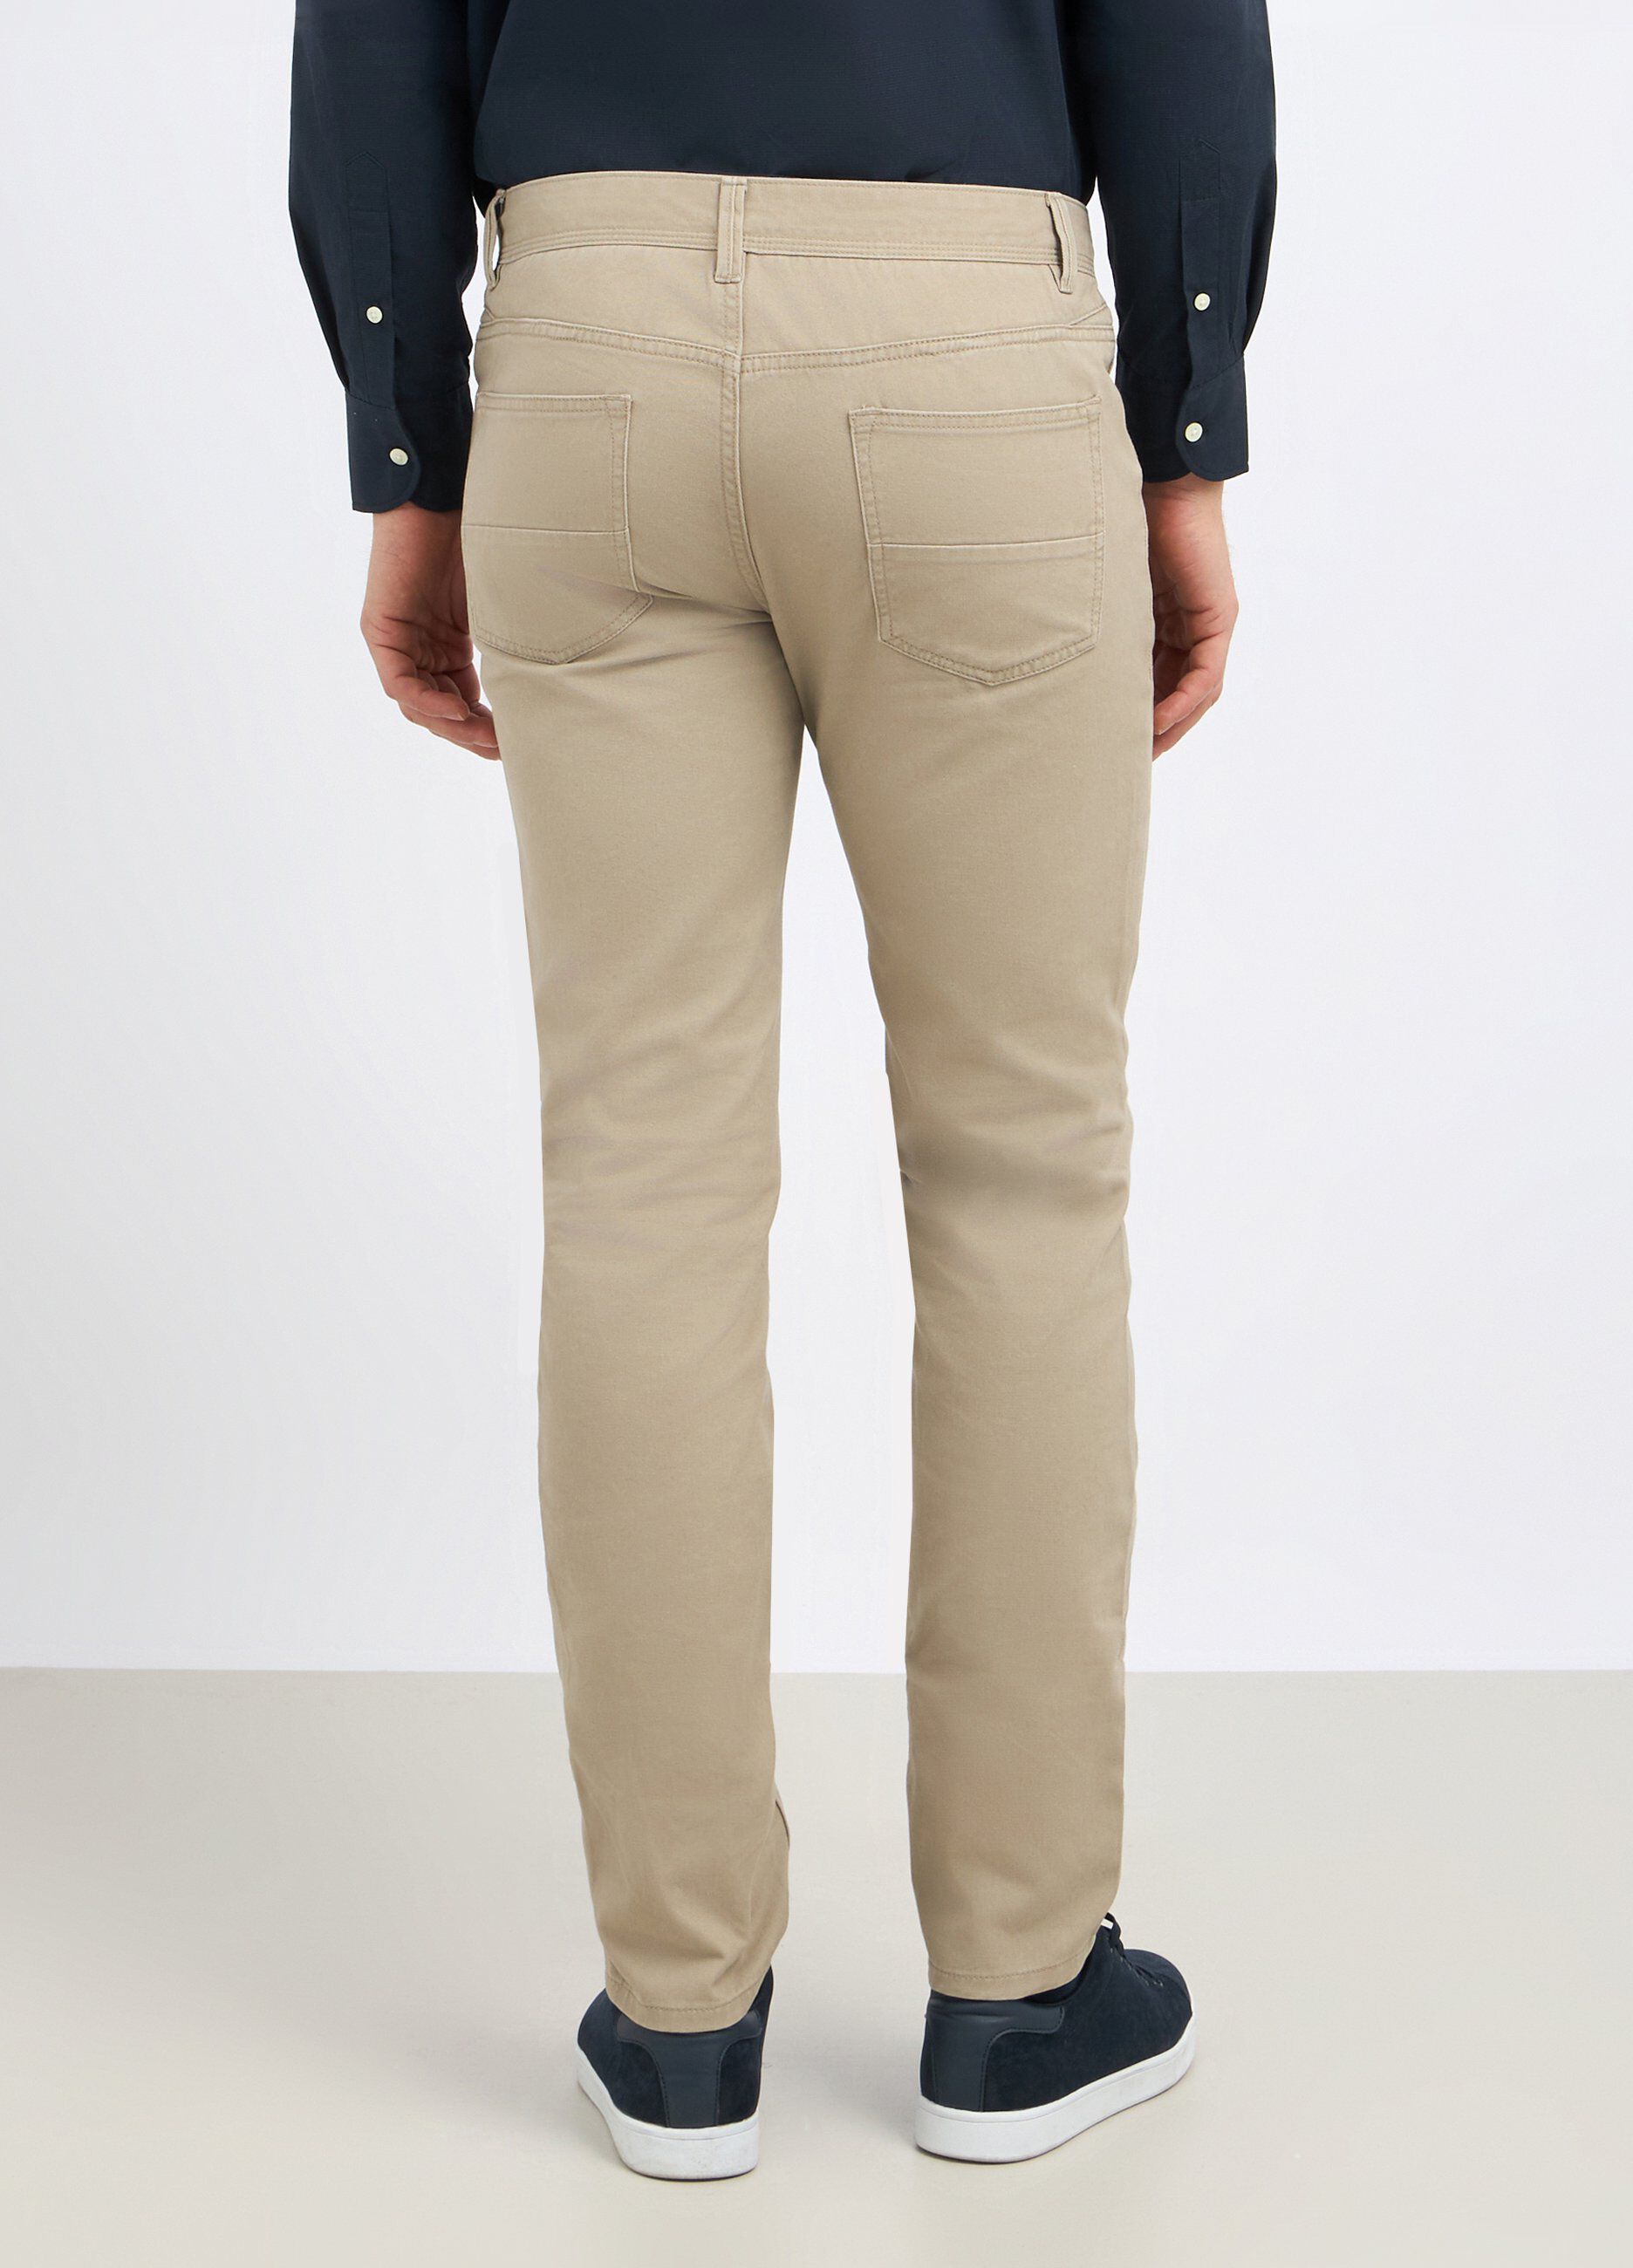 Pantaloni in puro cotone modello 5 tasche uomo_1